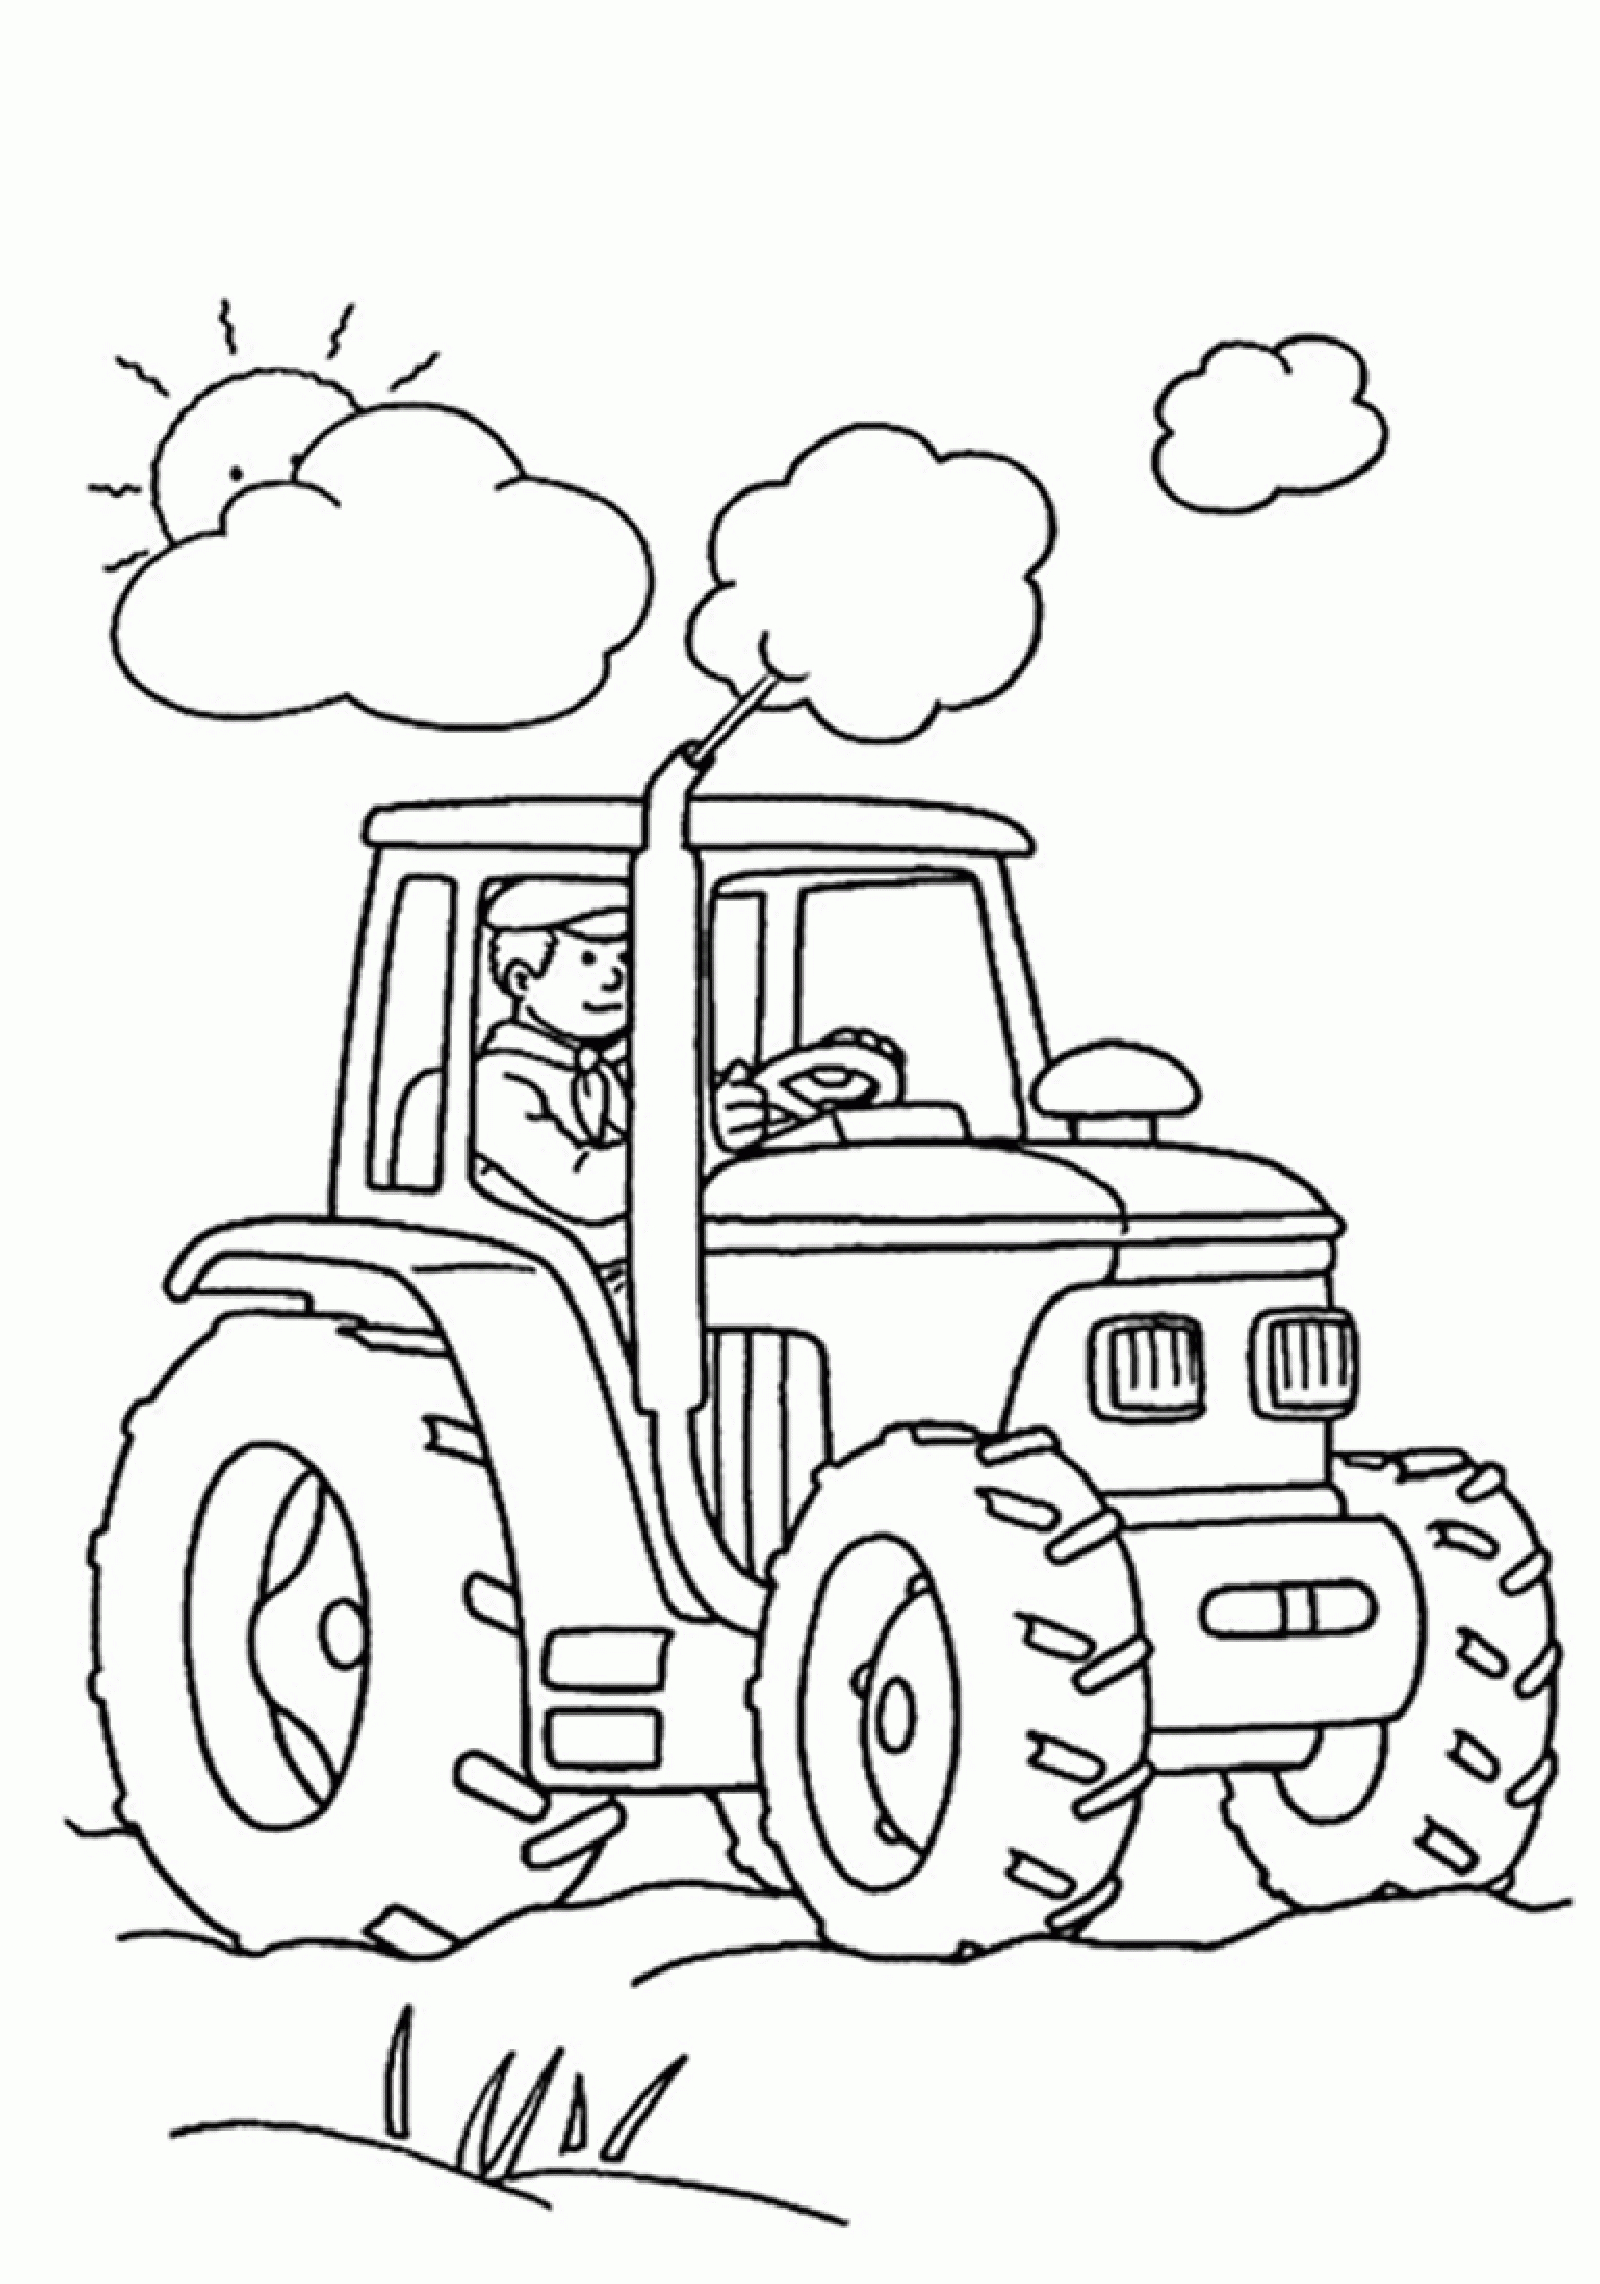 Coloriage Sur La Ferme (Tracteurs, Fermier, Animaux concernant Dessin Animaux De La Ferme À Imprimer